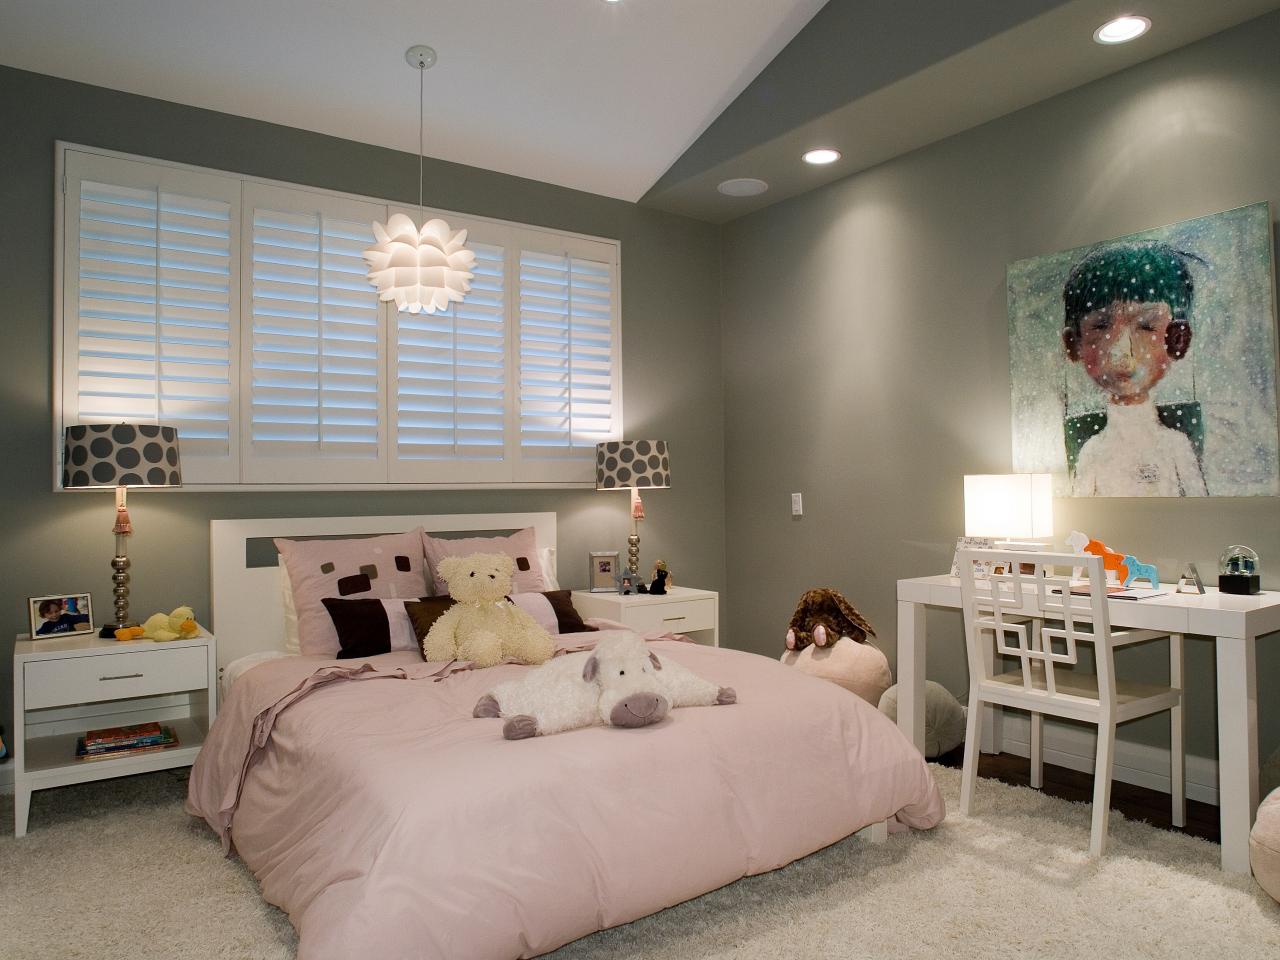 peinture chambre enfant gris lit draps roses grand lit arrangements lampe design